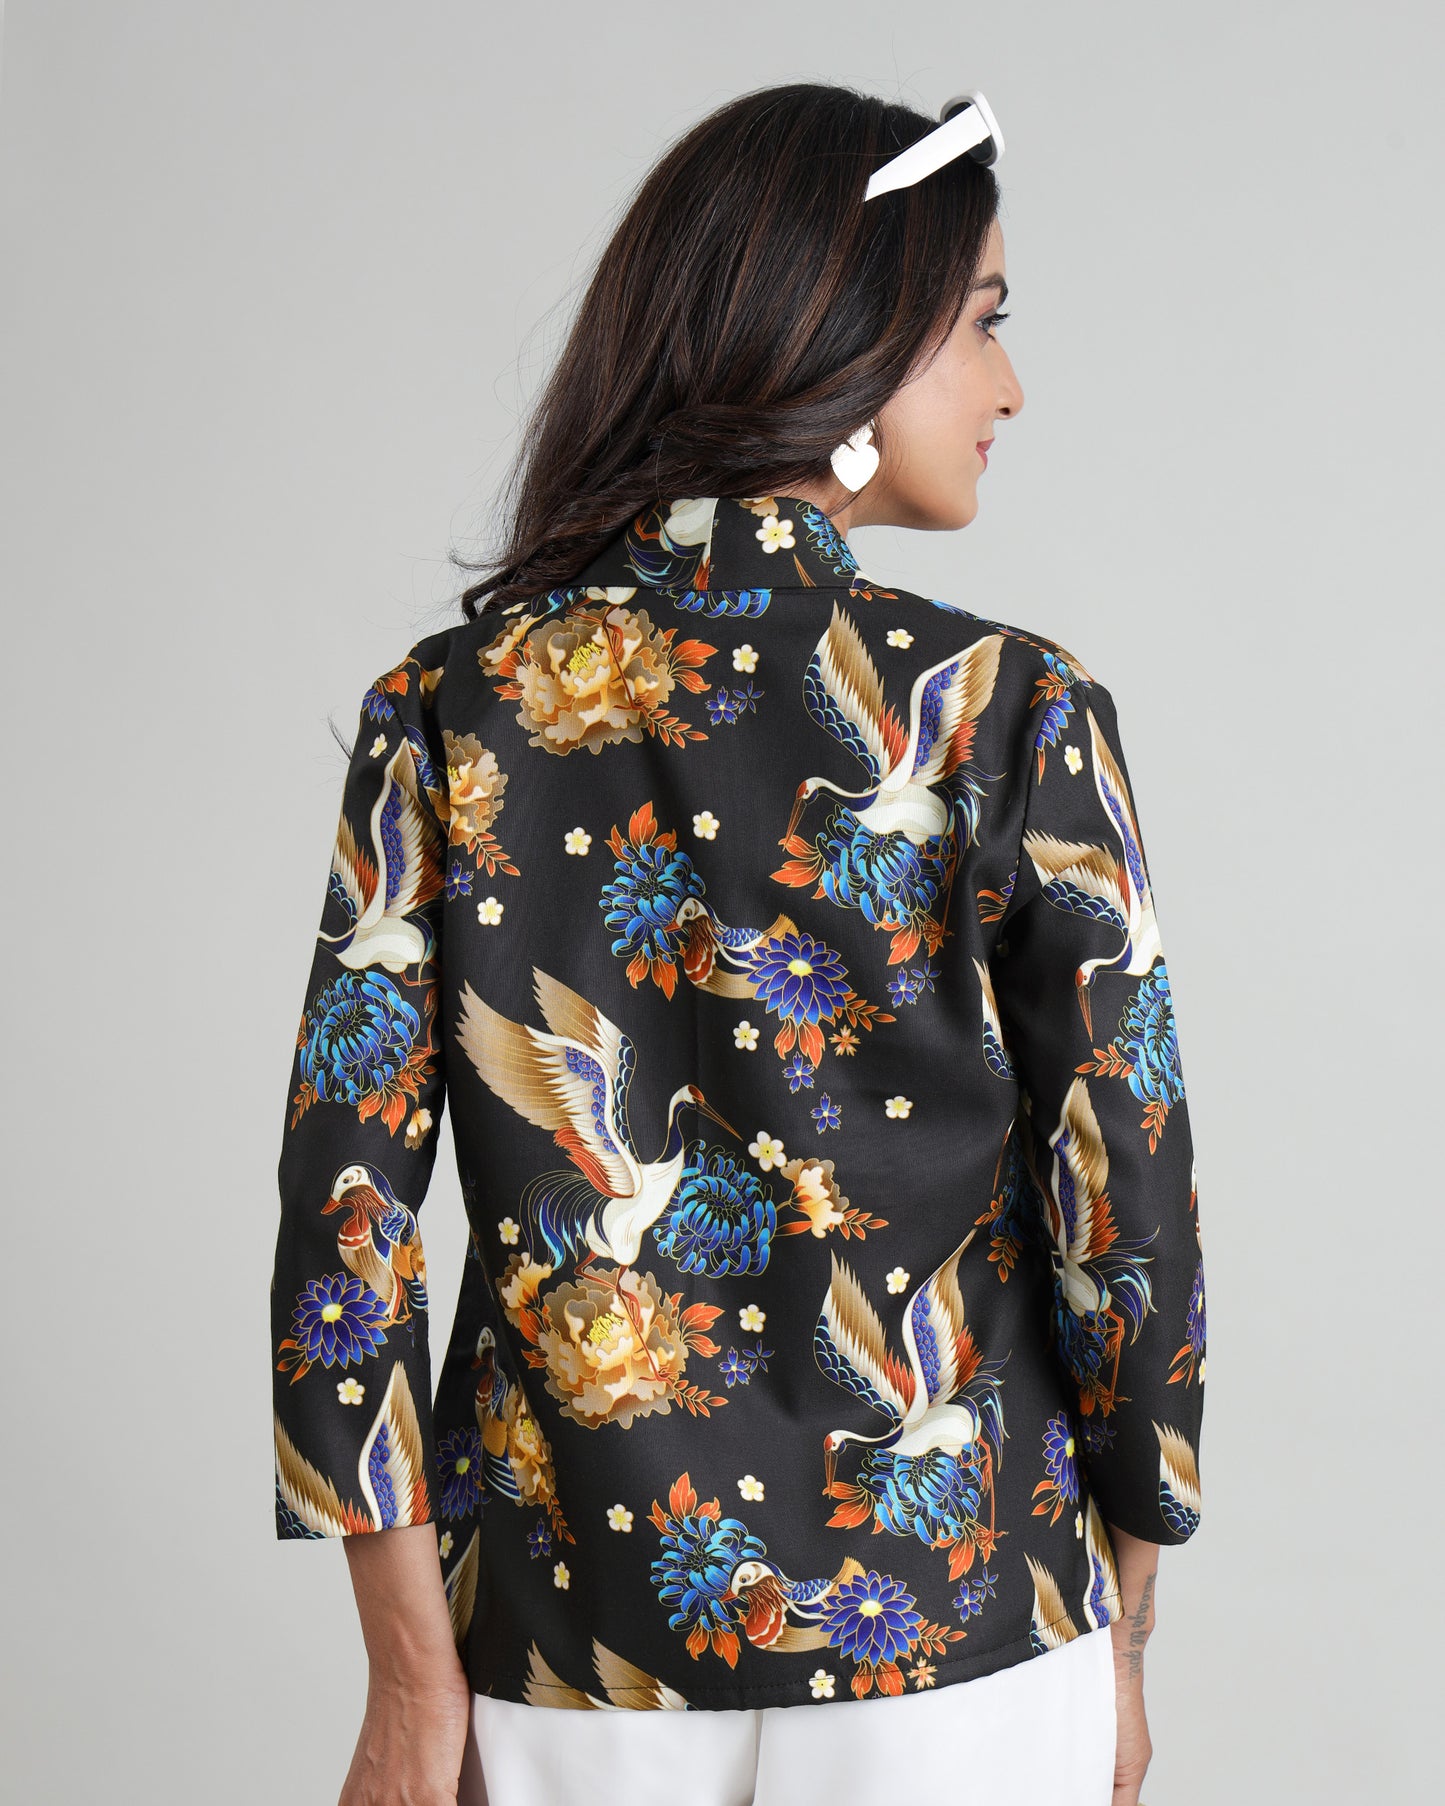 Flawlessly Stitched : Women's Animal Kingdom Jacket